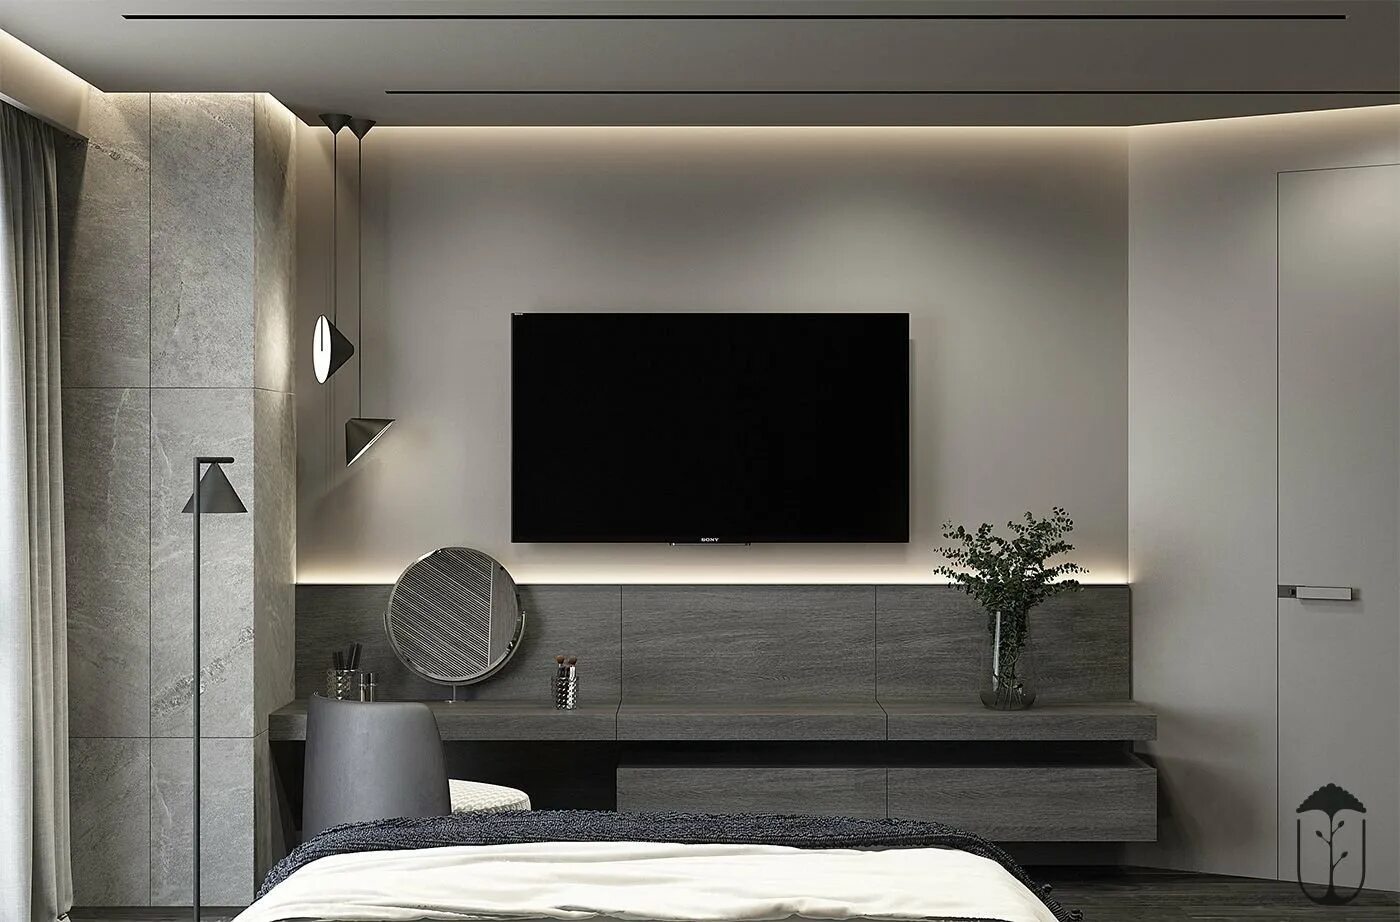 Телевизор перед кроватью. Телевизор в спальне на стене. Интерьер спальни с телевизором. Телевизор в интерьере Минимализм. Интерьер спальни с телевизором на стене.